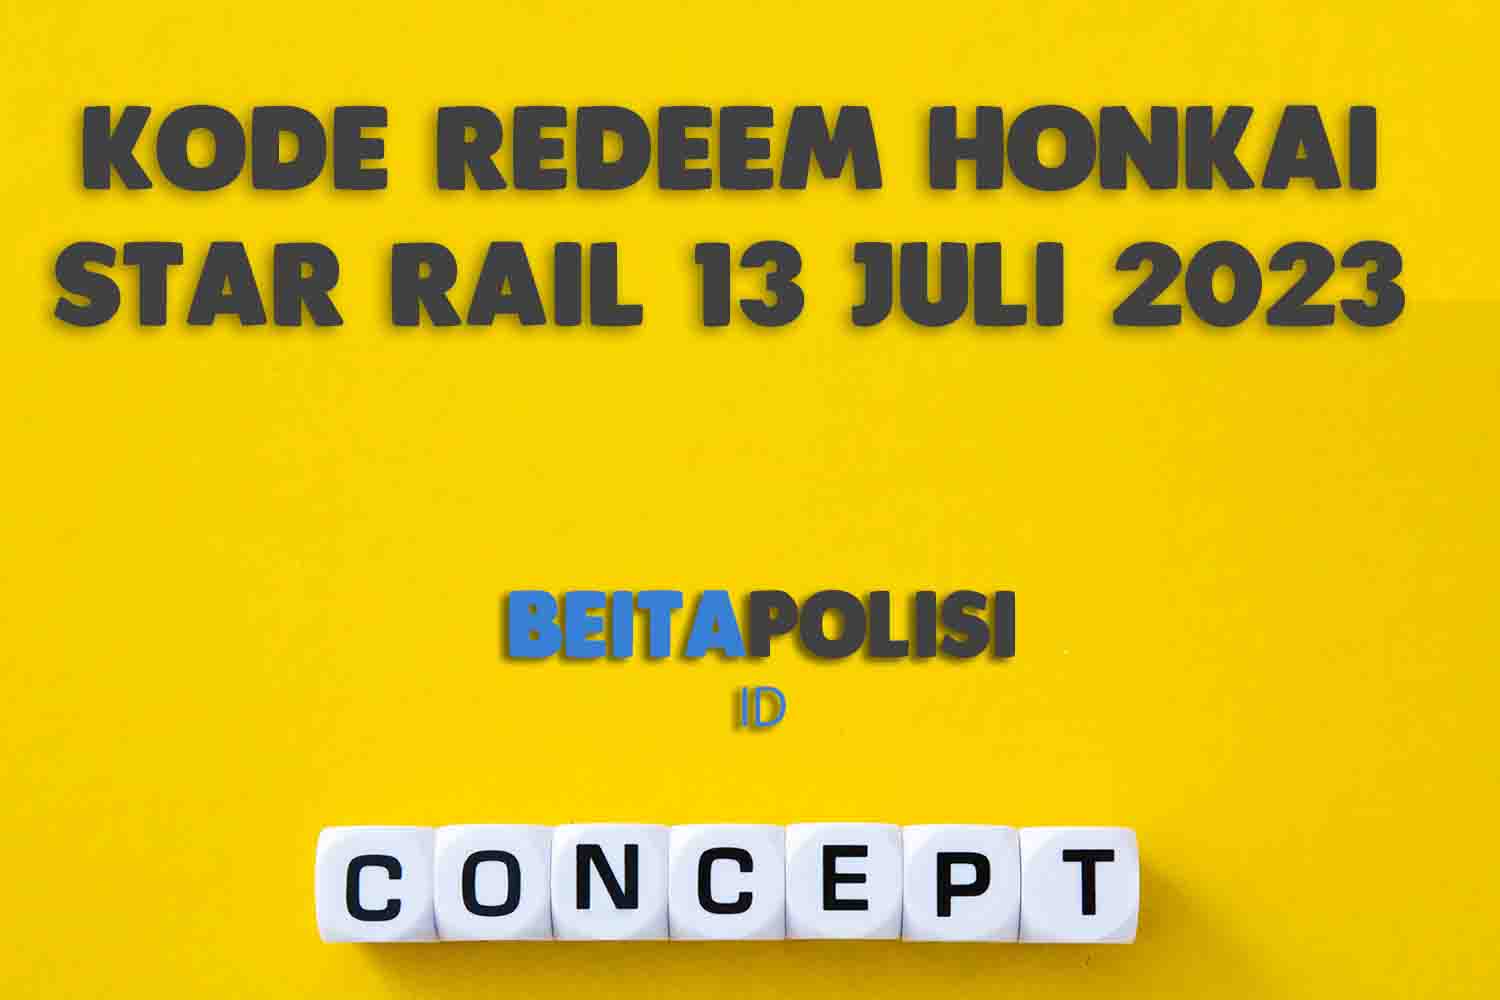 Kode Redeem Honkai Star Rail 13 Juli 2023 Terbaru